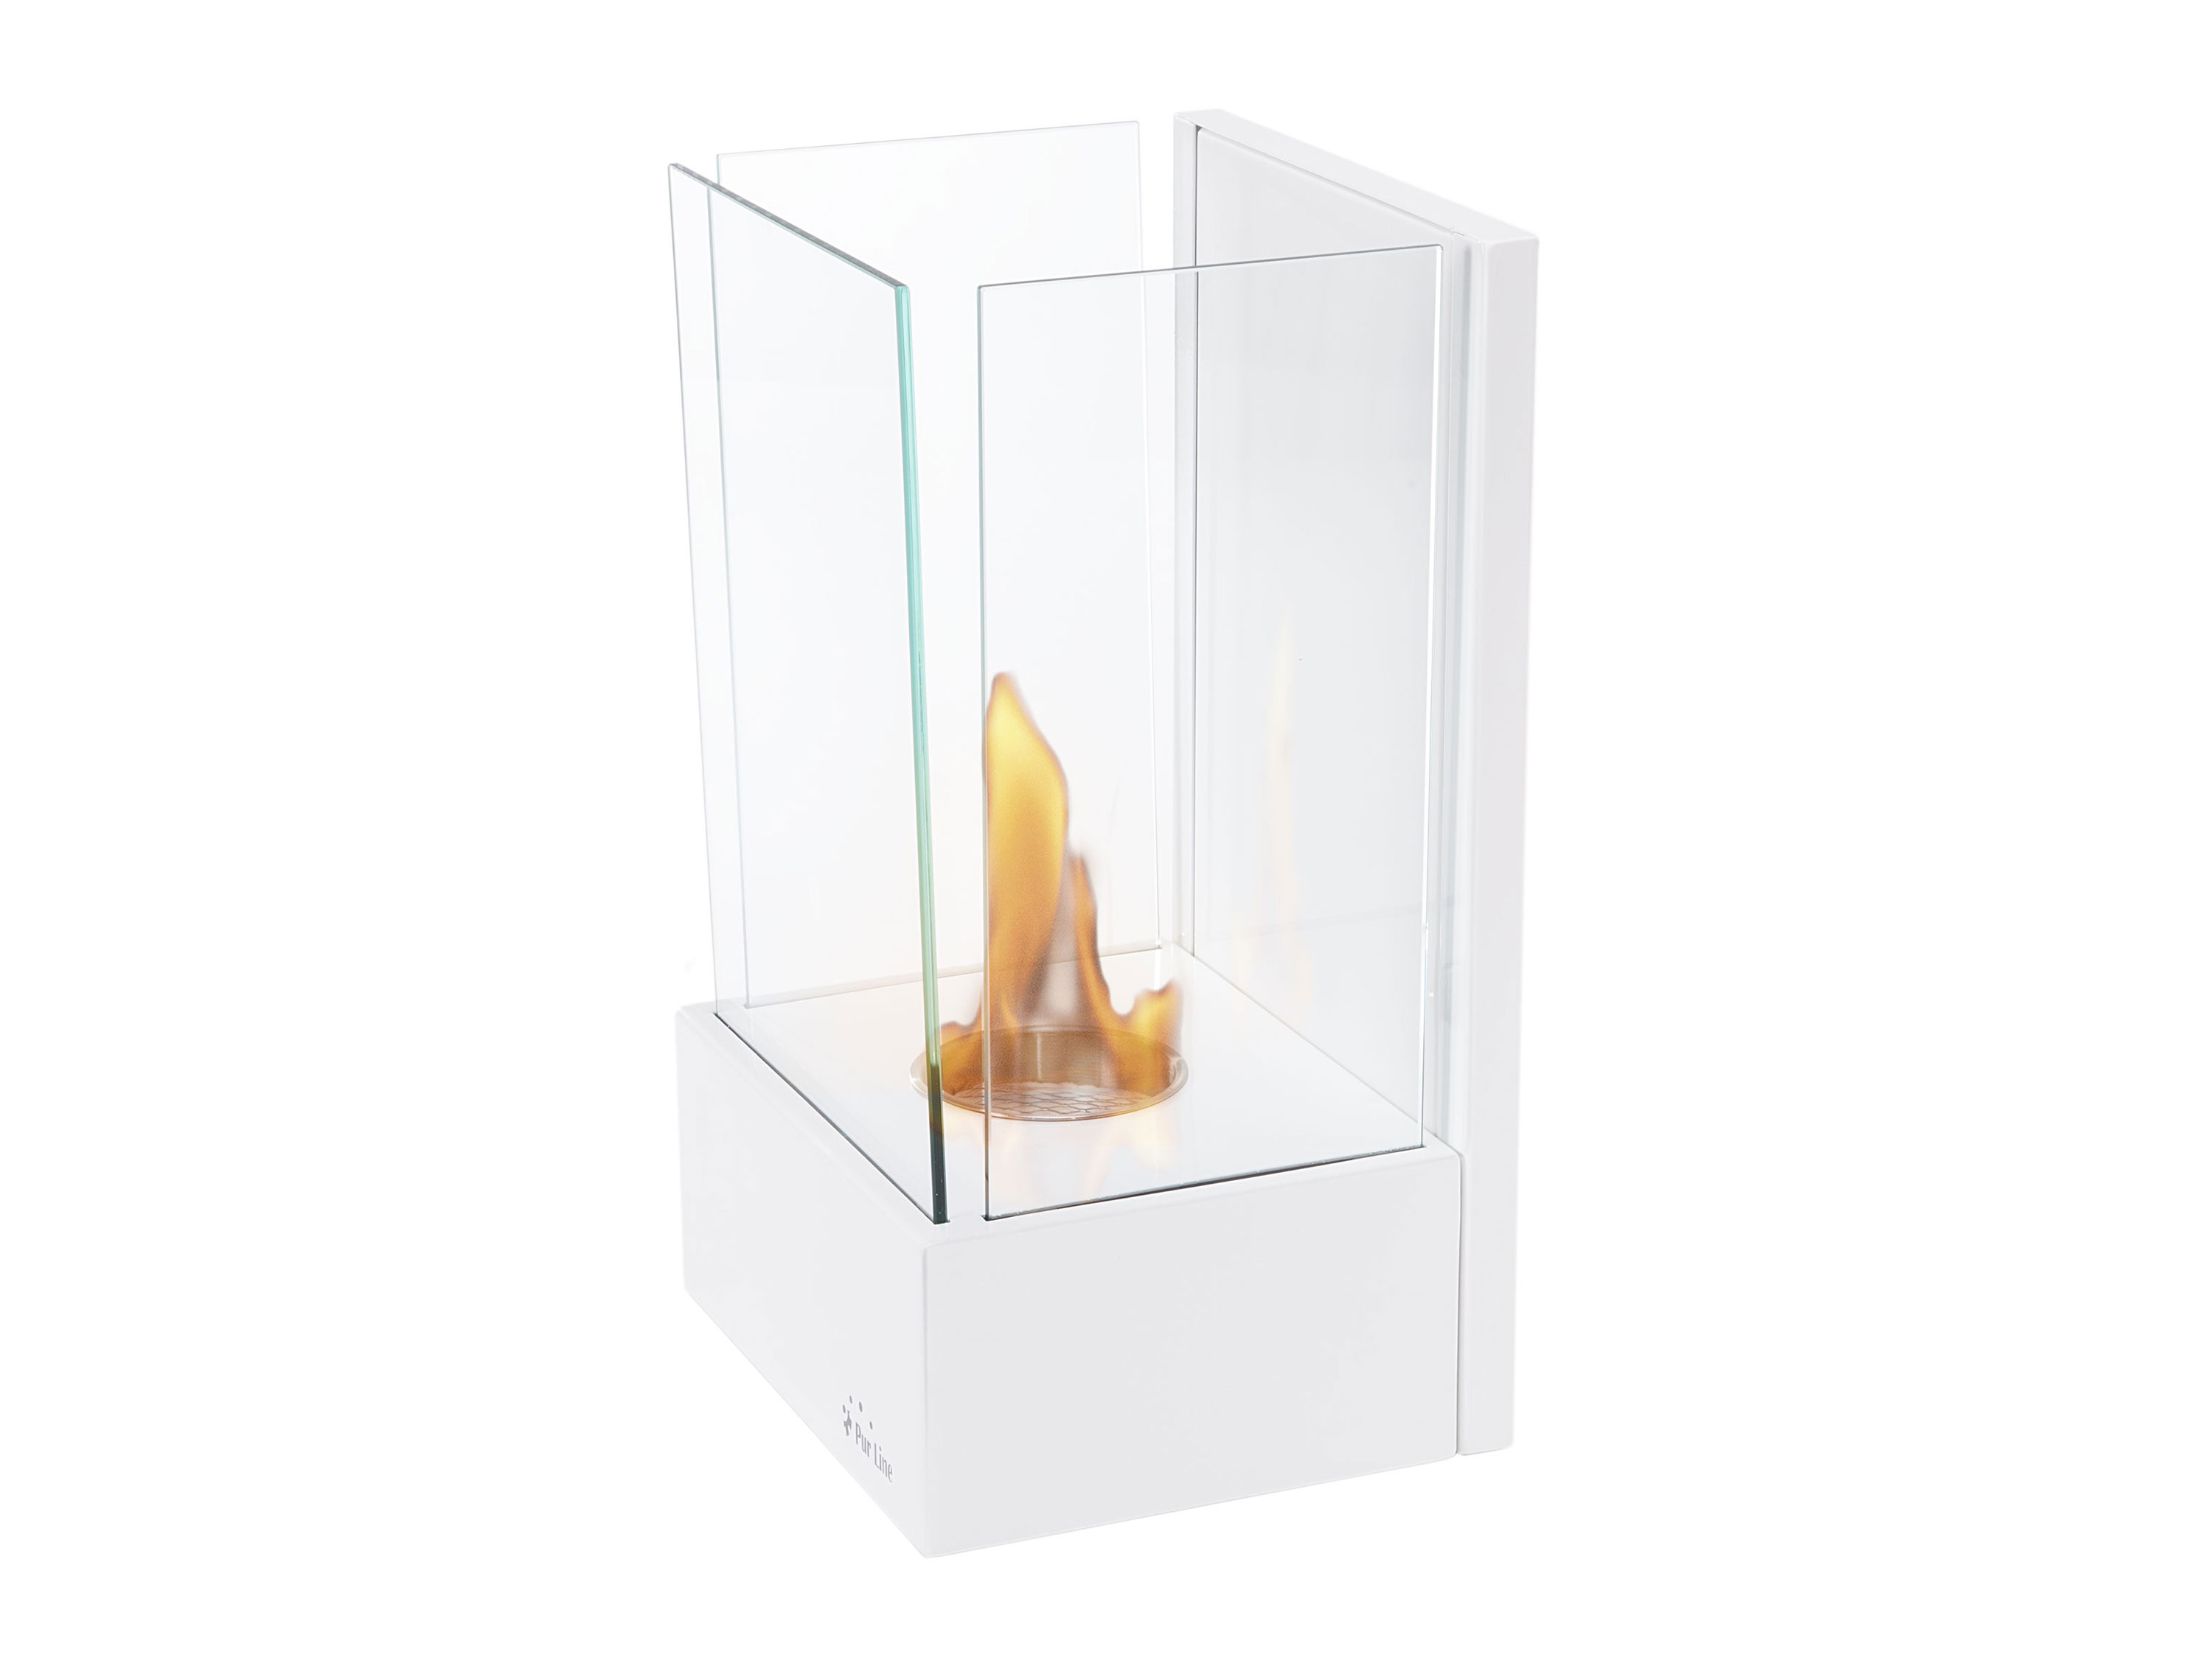 aus PURLINE gehärteten Stahl weißen Watt) Gläser (750 Biokamin Design drei Bioethanol-Wandkamin mit senkrechtes wandmontierter